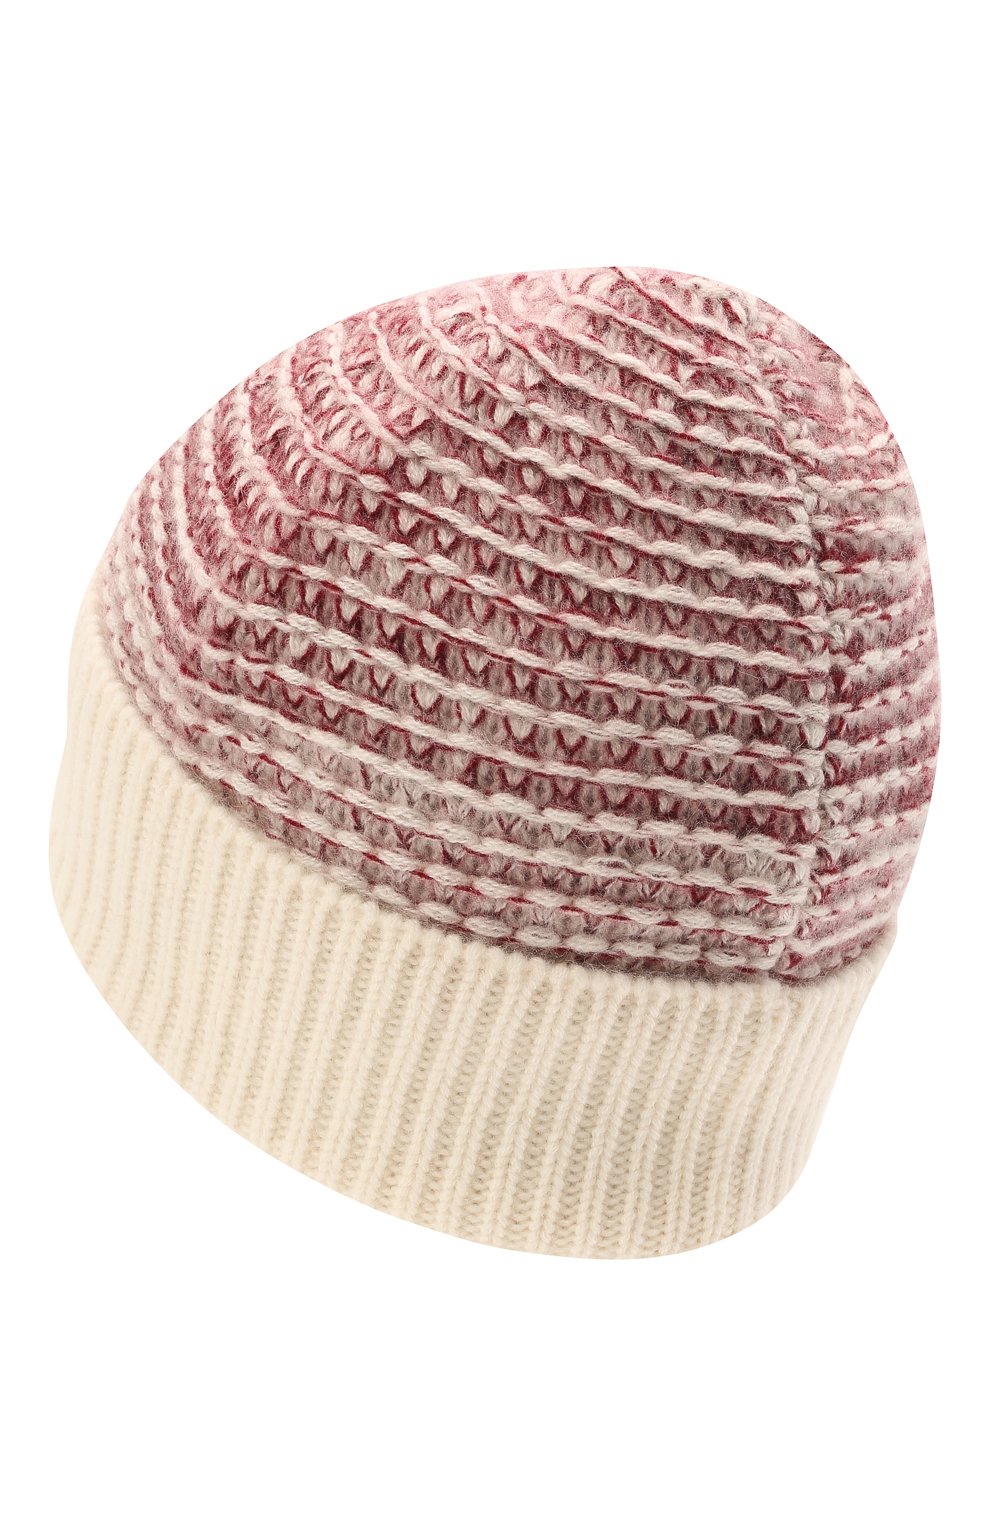 Женская кашемировая шапка KITON розового цвета, арт. D52764X0480A | Фото 2 (Материал: Текстиль, Кашемир, Шерсть)